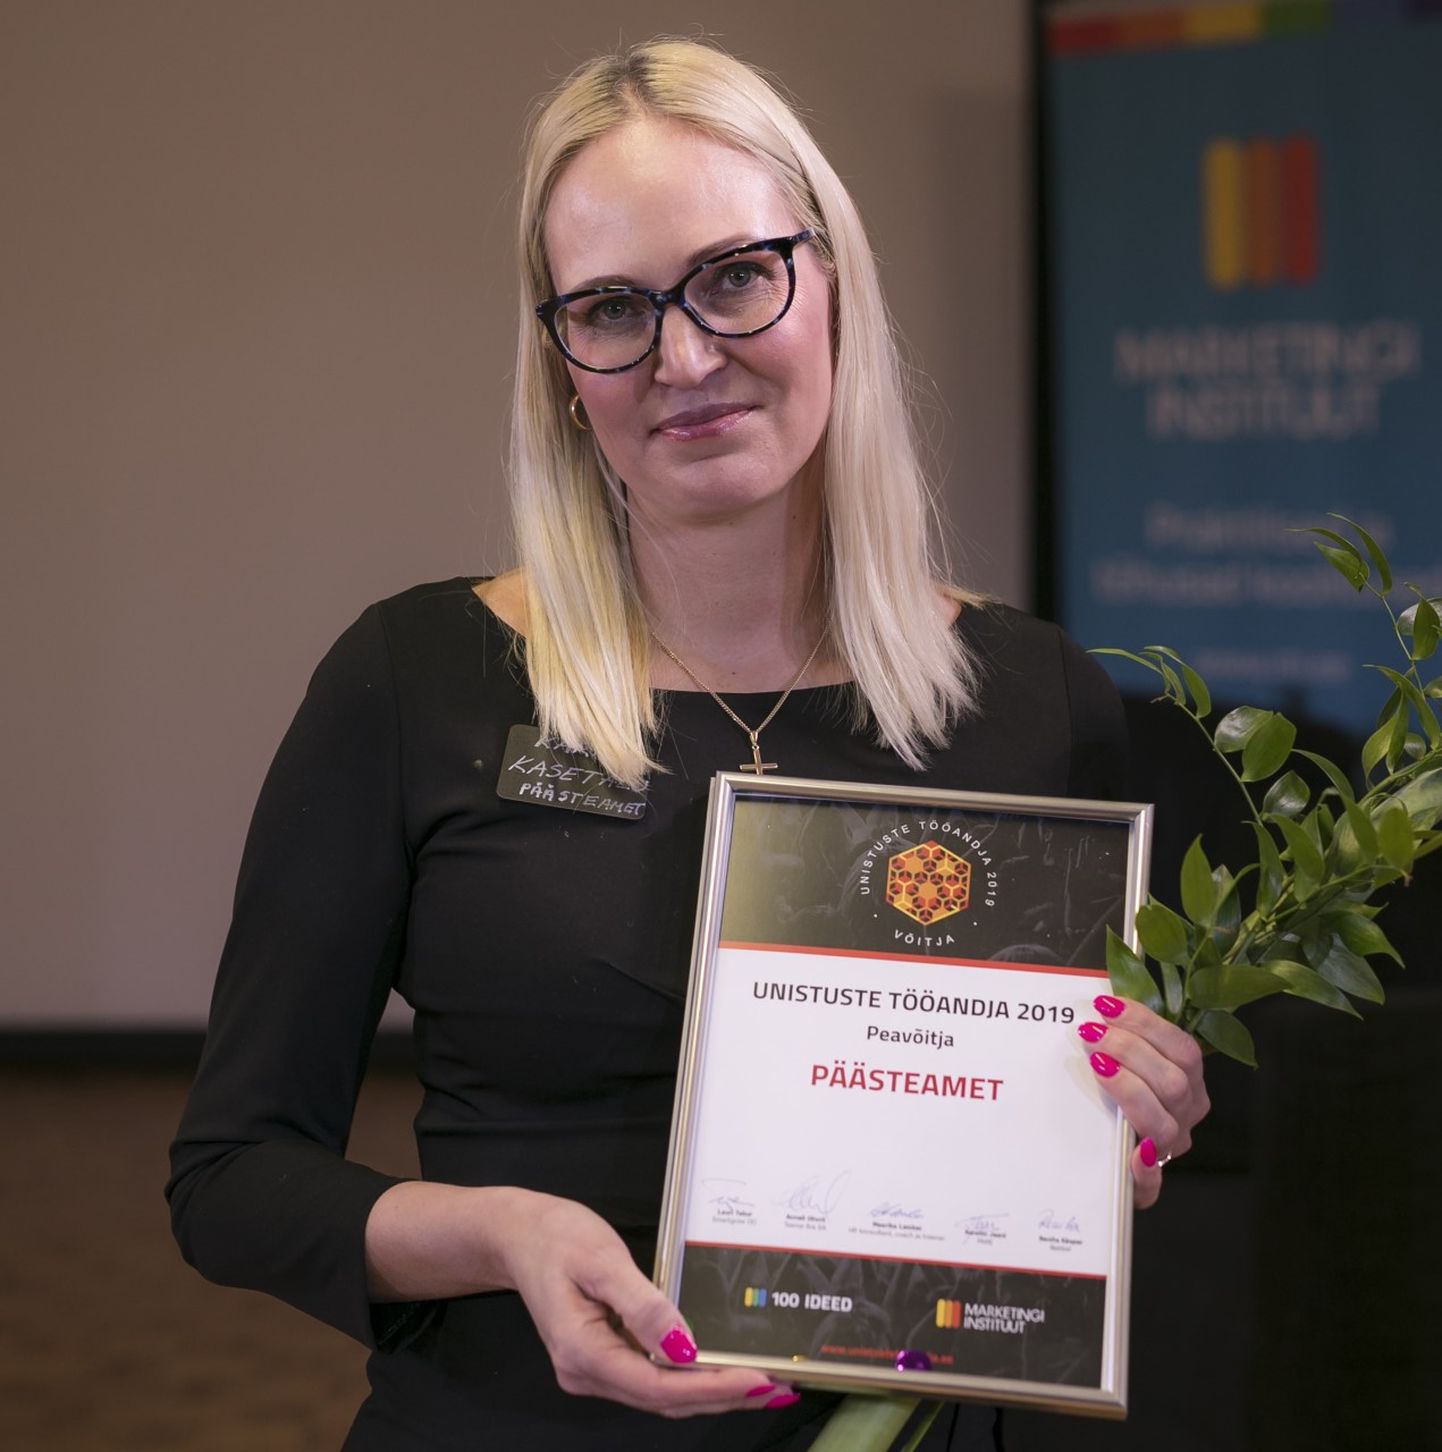 Mulluse konkursi võitnud Päästeameti personaliekspert Karin Kasetalu koos diplomiga.